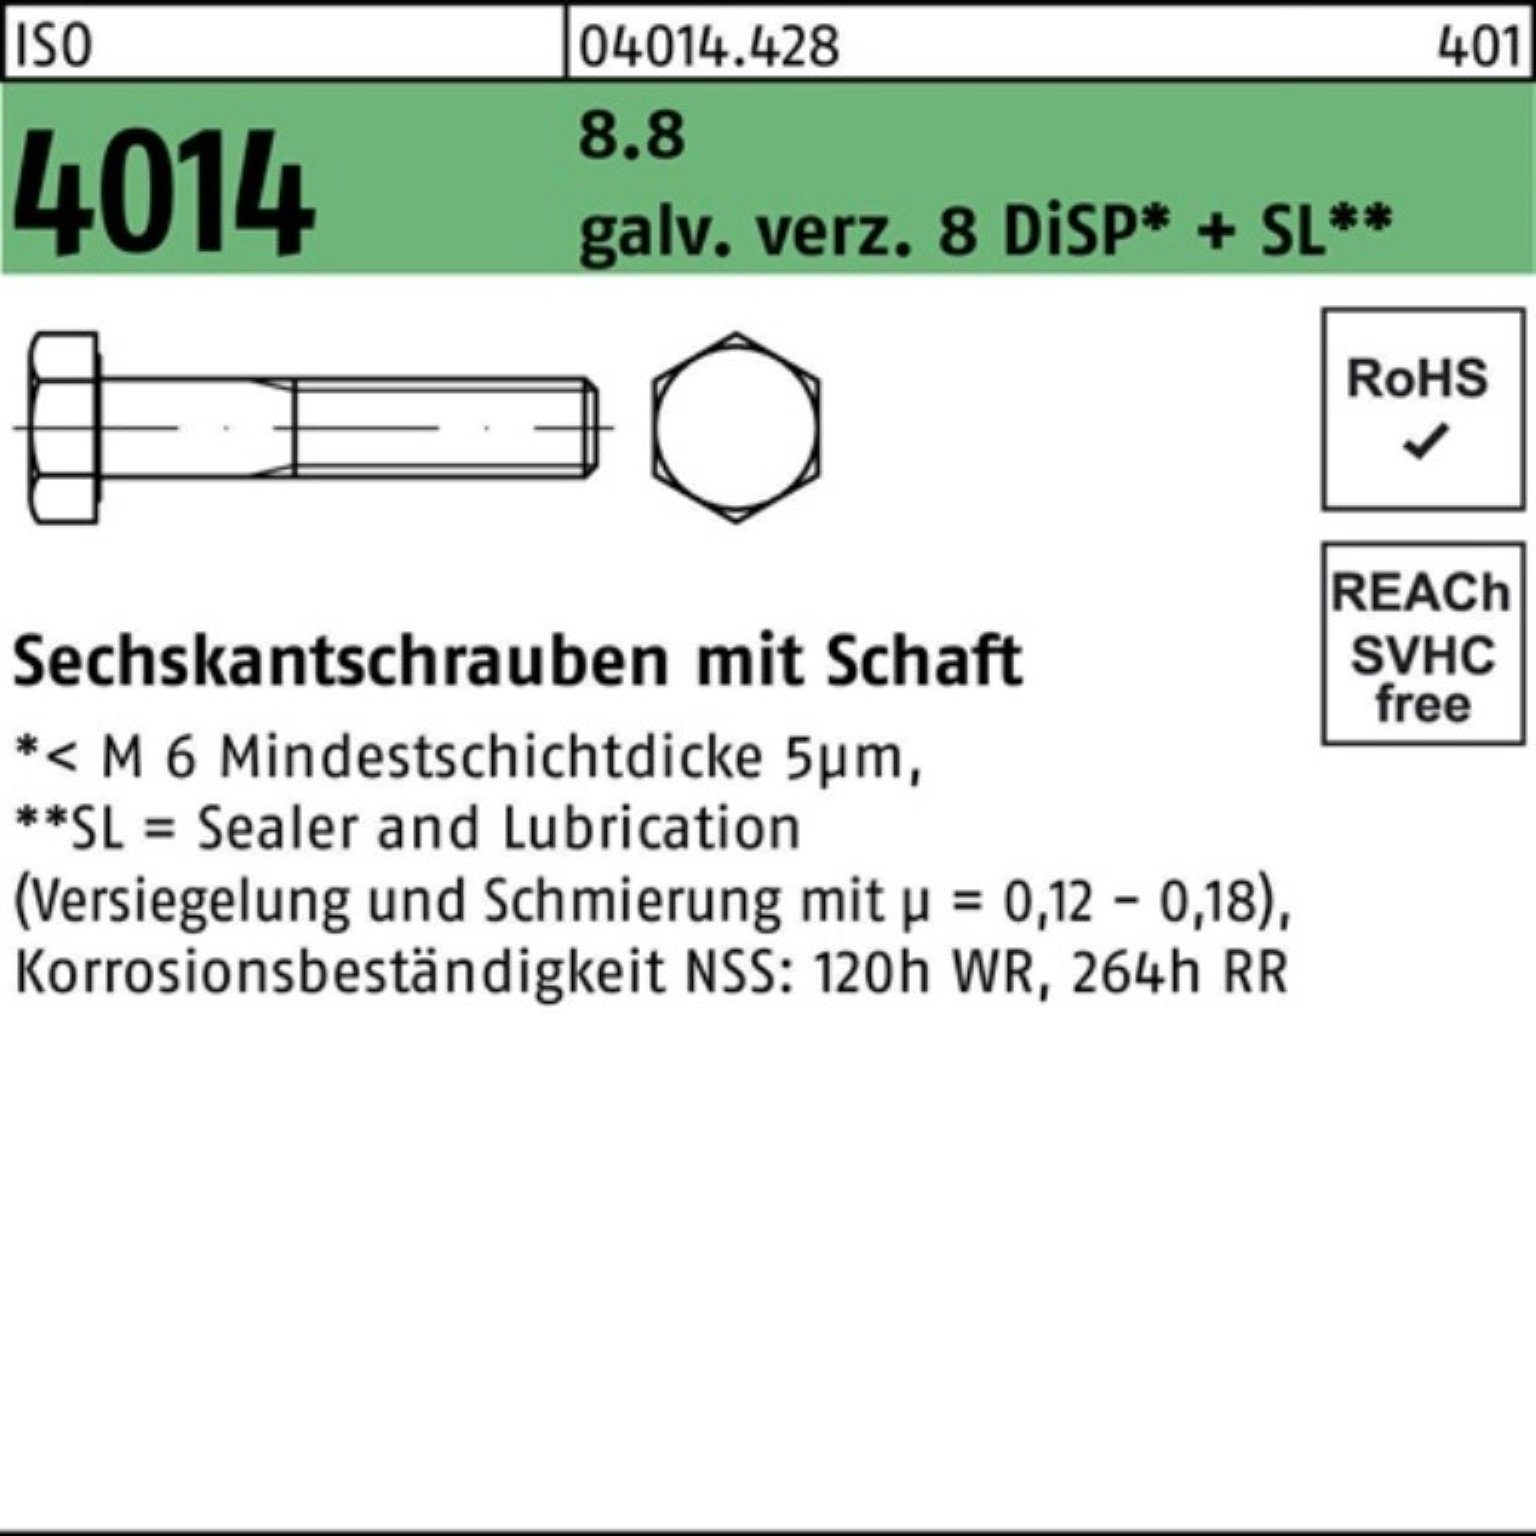 Bufab Sechskantschraube 100er Pack Sechskantschraube ISO 4014 Schaft M20x105 8.8 galv.verz. 8